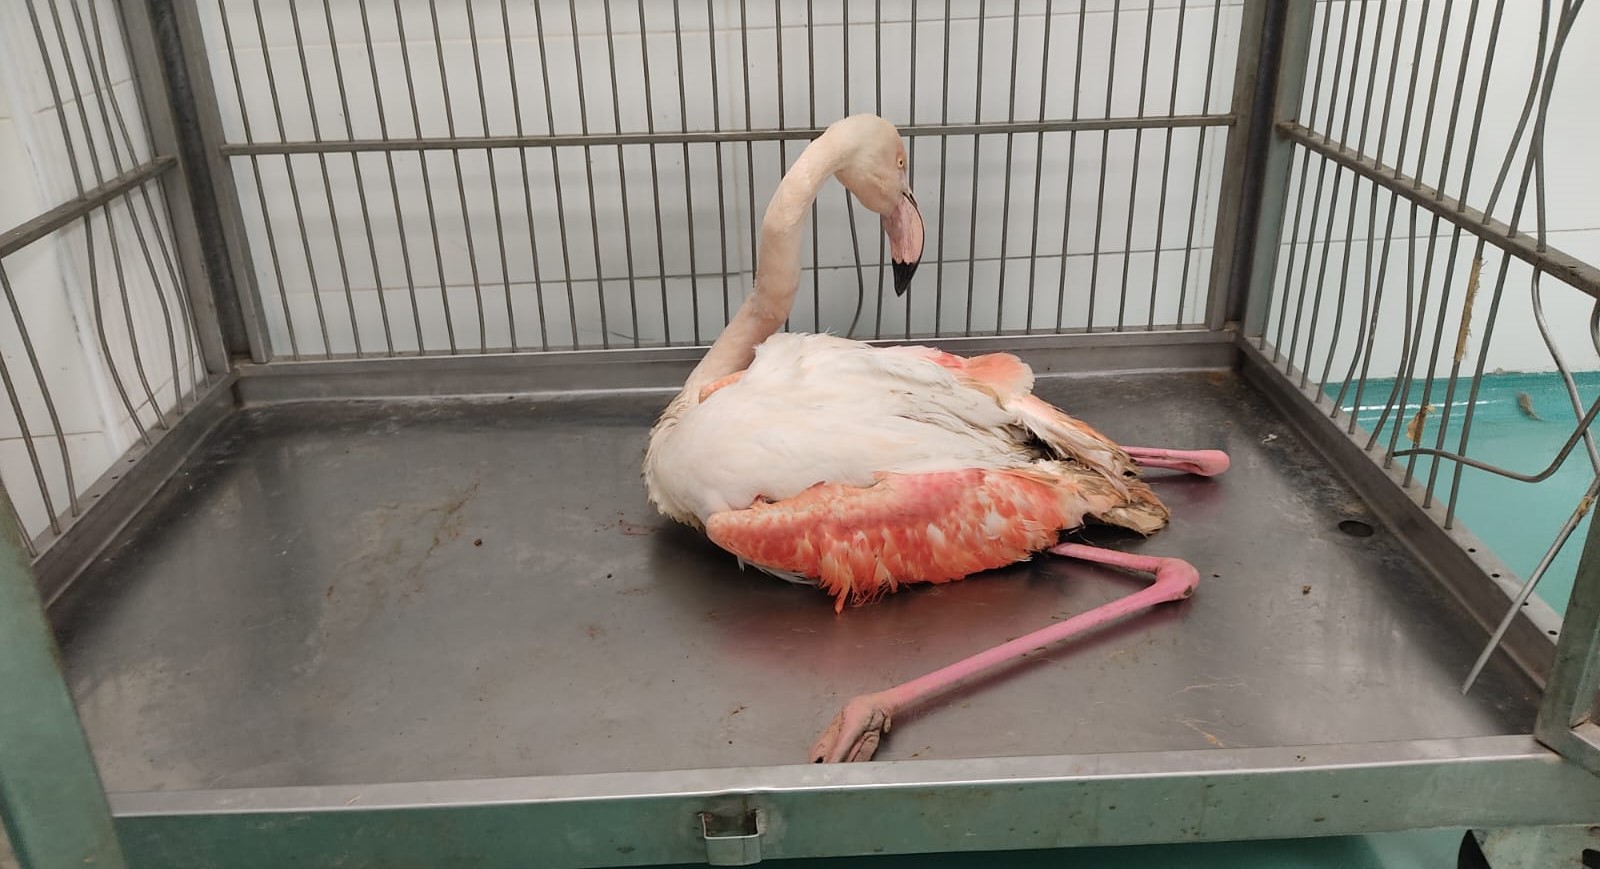 Suğla Gölü kıyısındaki yaralı flamingo tedaviye alındı